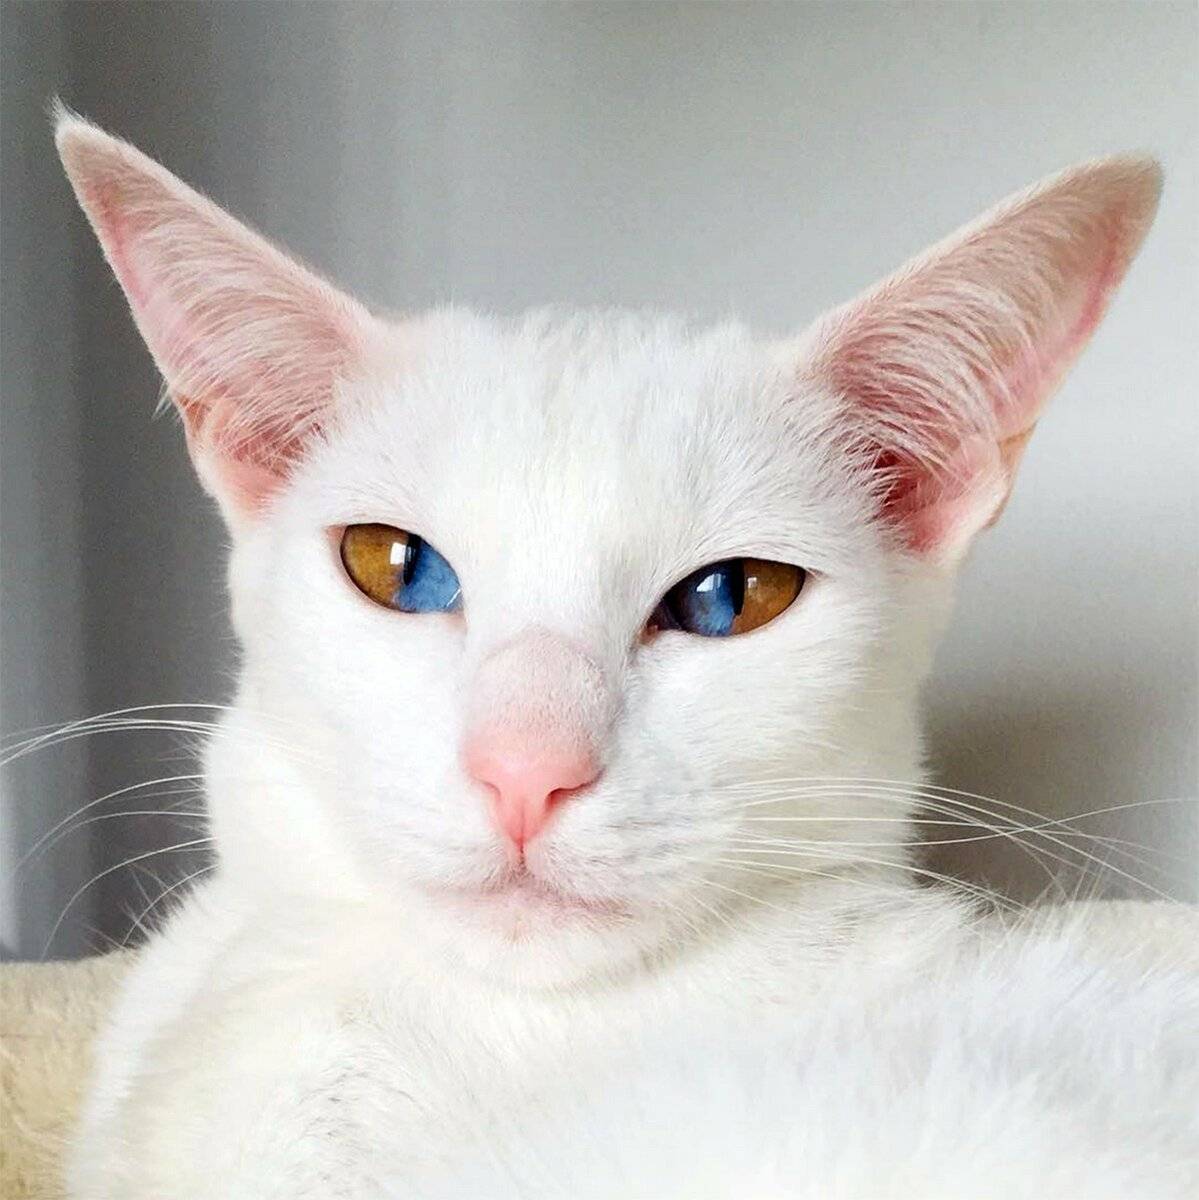 Почему у некоторых кошек разные глаза: причина гетерохромии и породы разноглазых котов – белых, черных, разноцветных